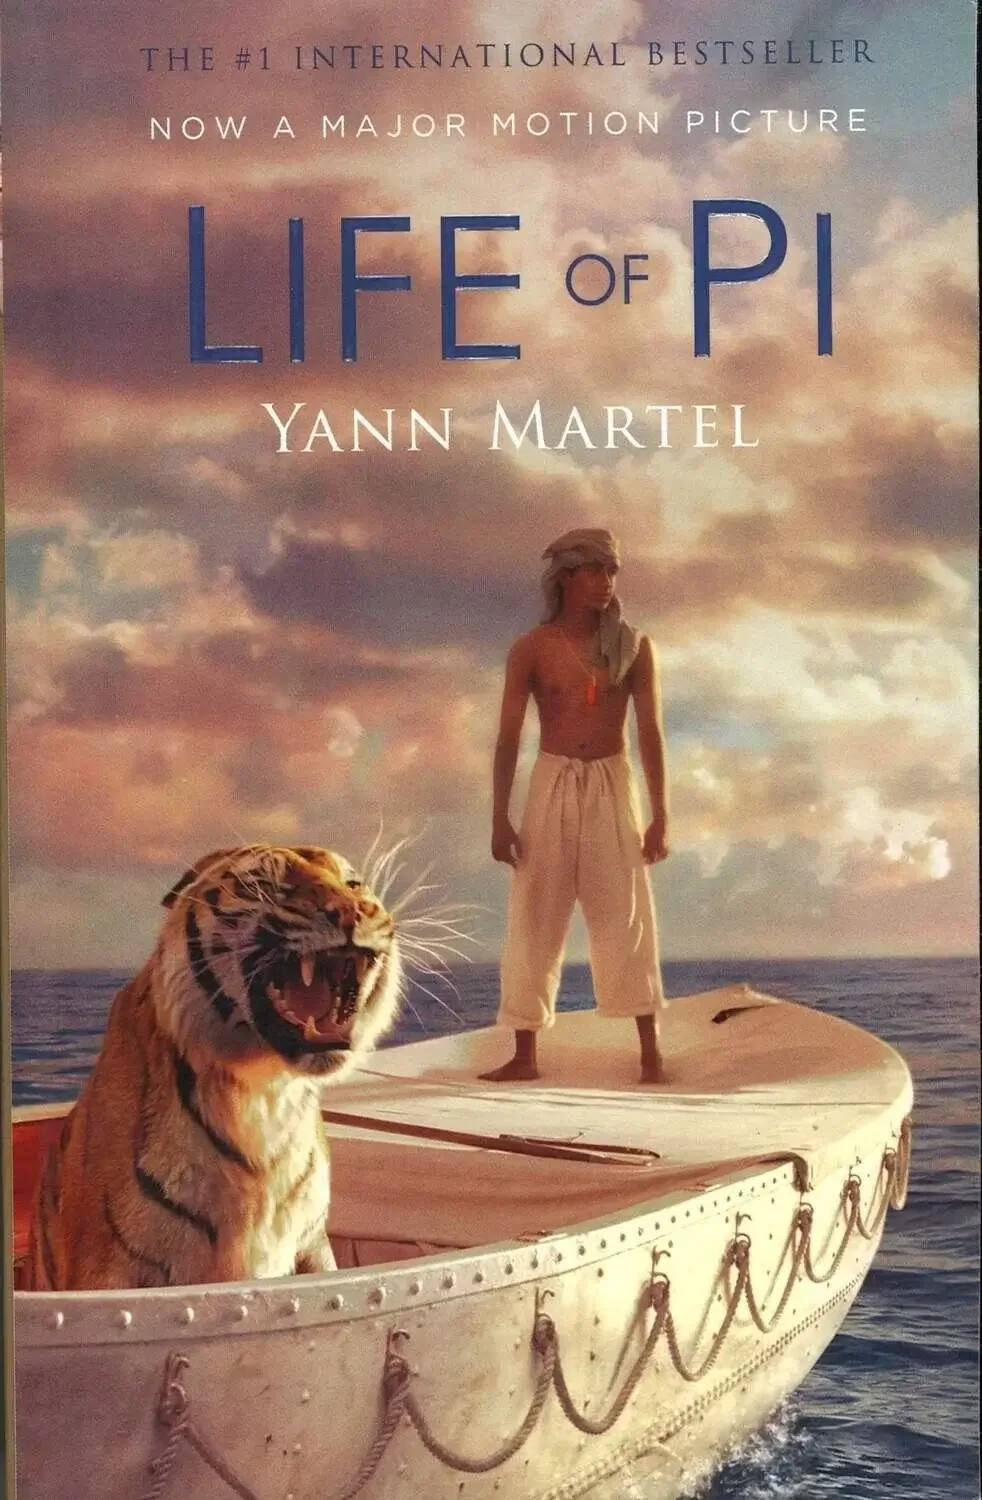 Life of PI by Yann Martel